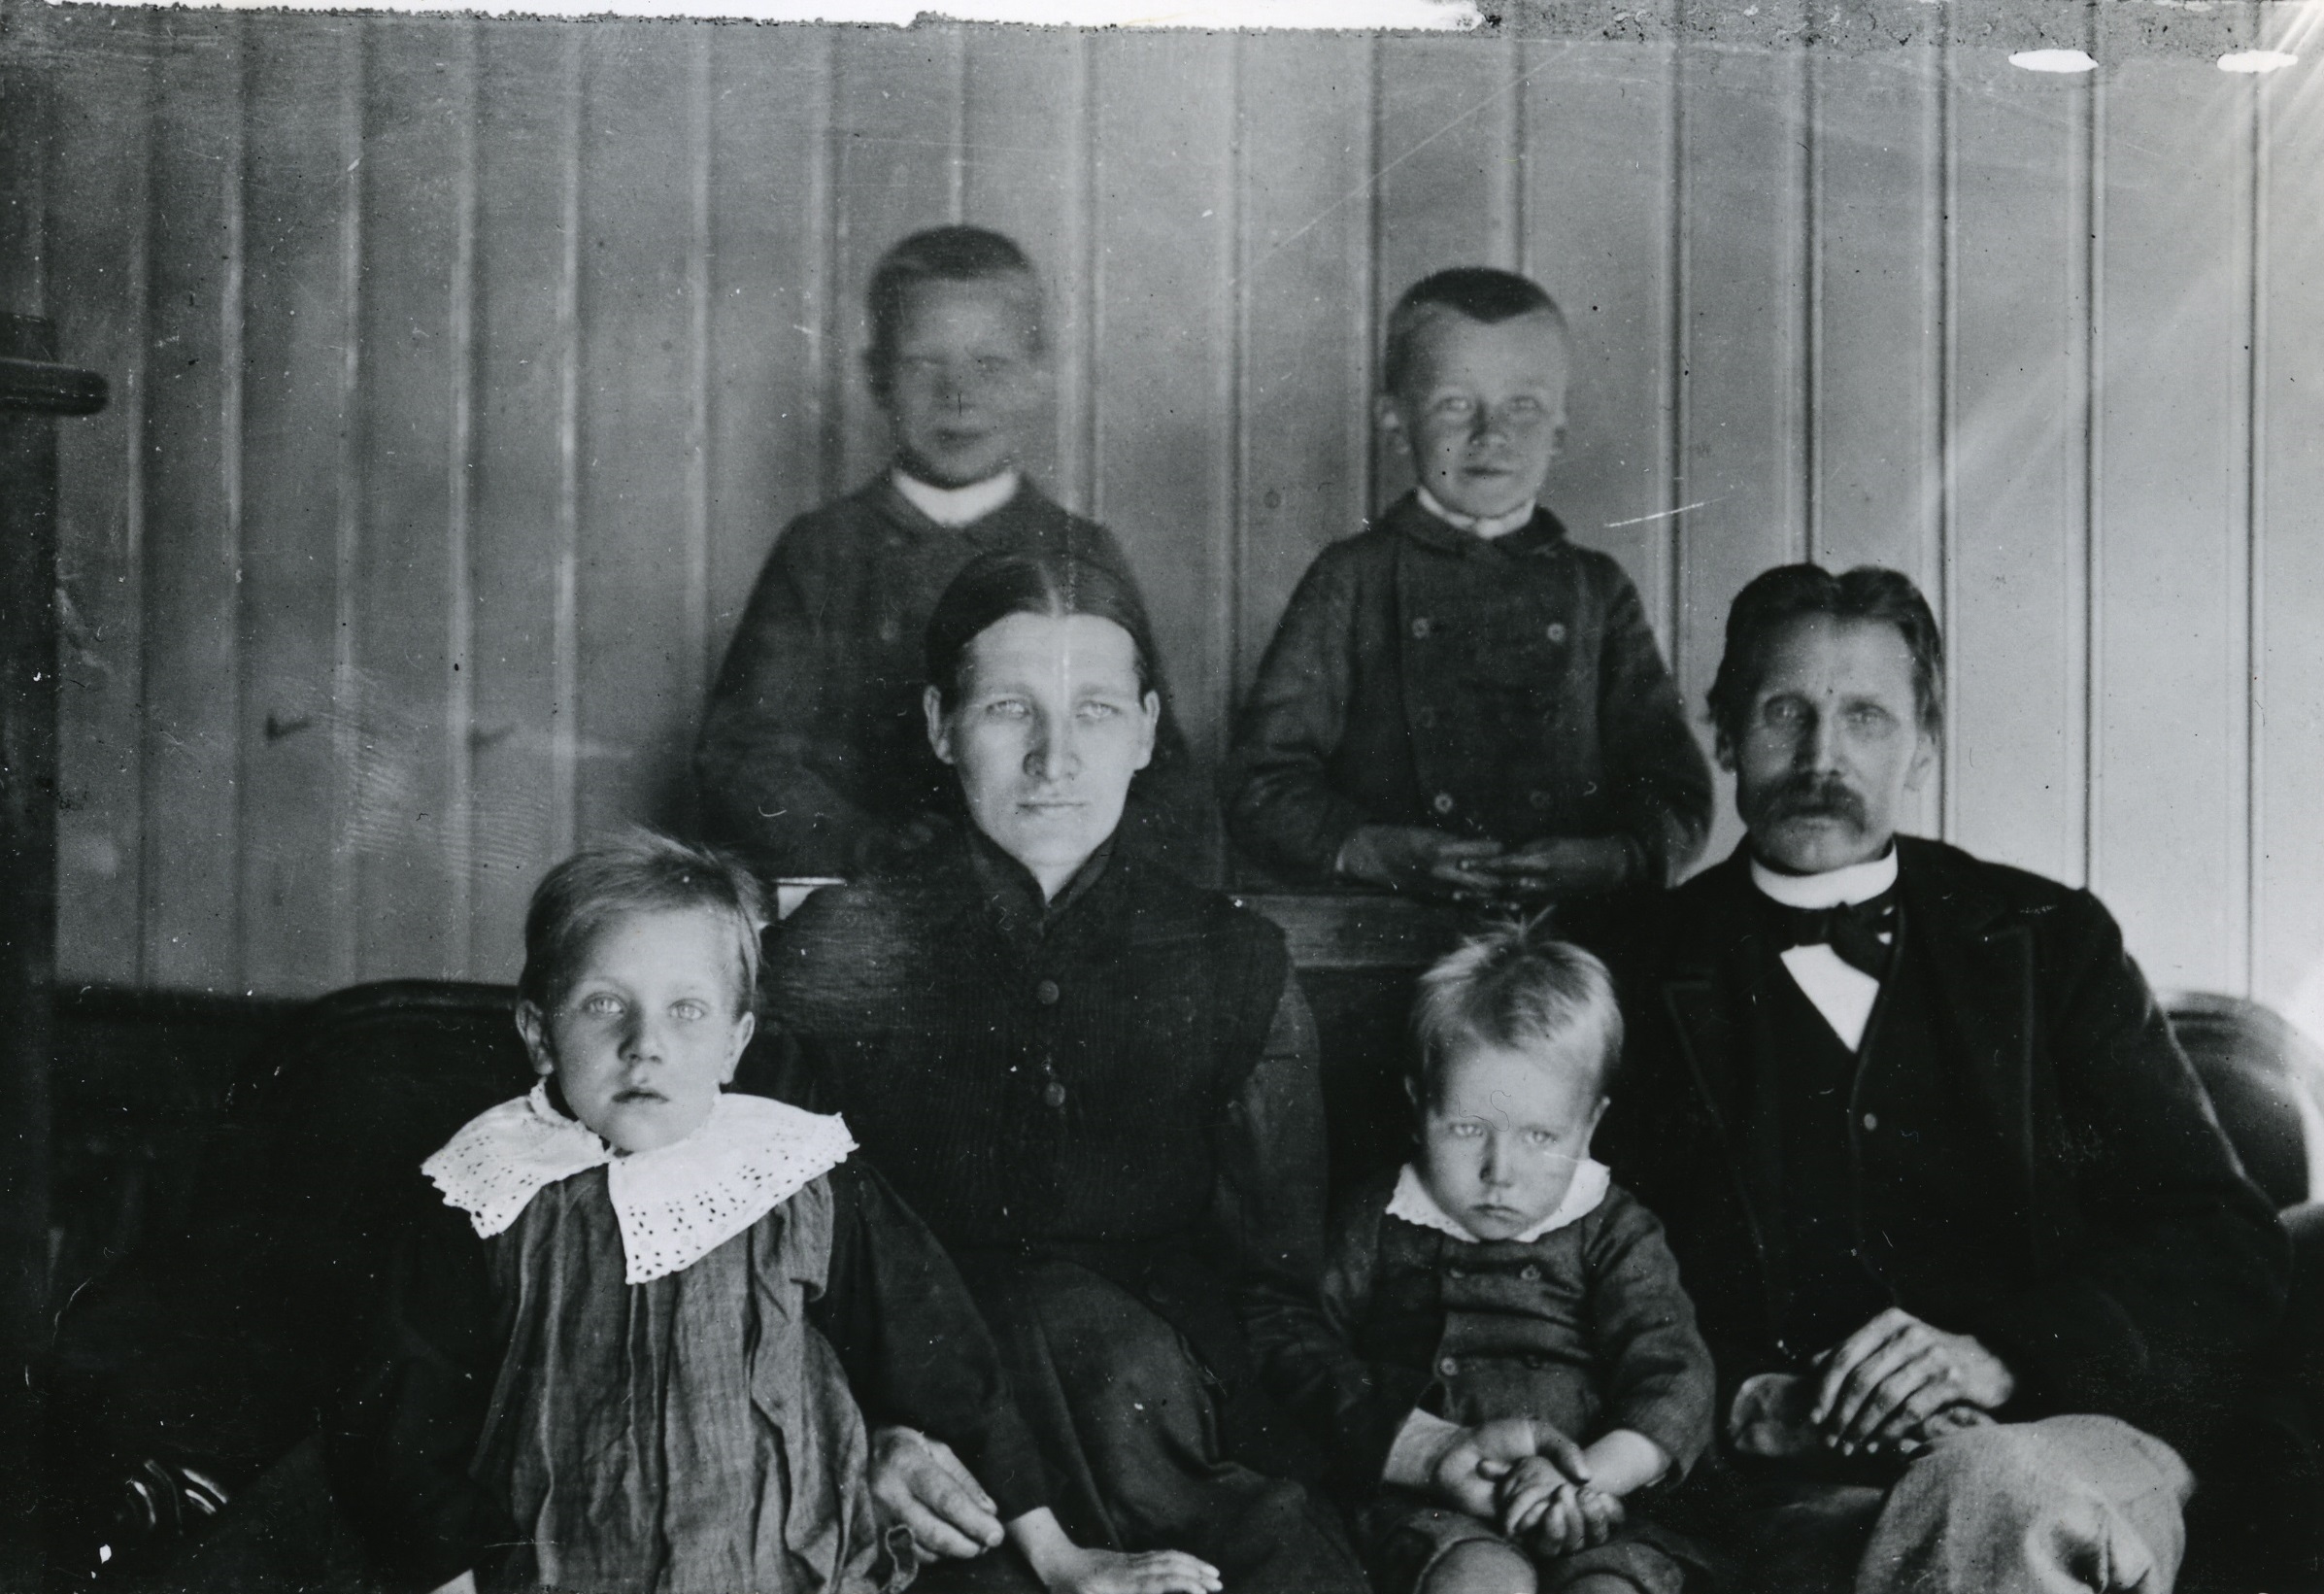 ANTON OG FAMILIEN: BAK STÅR KARL F. 1882 OG OSKAR F. 1885, I MIDTEN ANTONS MOR OG FAR OG FORAN ANNA F. 1887 OG ANTON F. 1890. FOTO: ARBEIDERMINNER, PRIVAT FOTO.